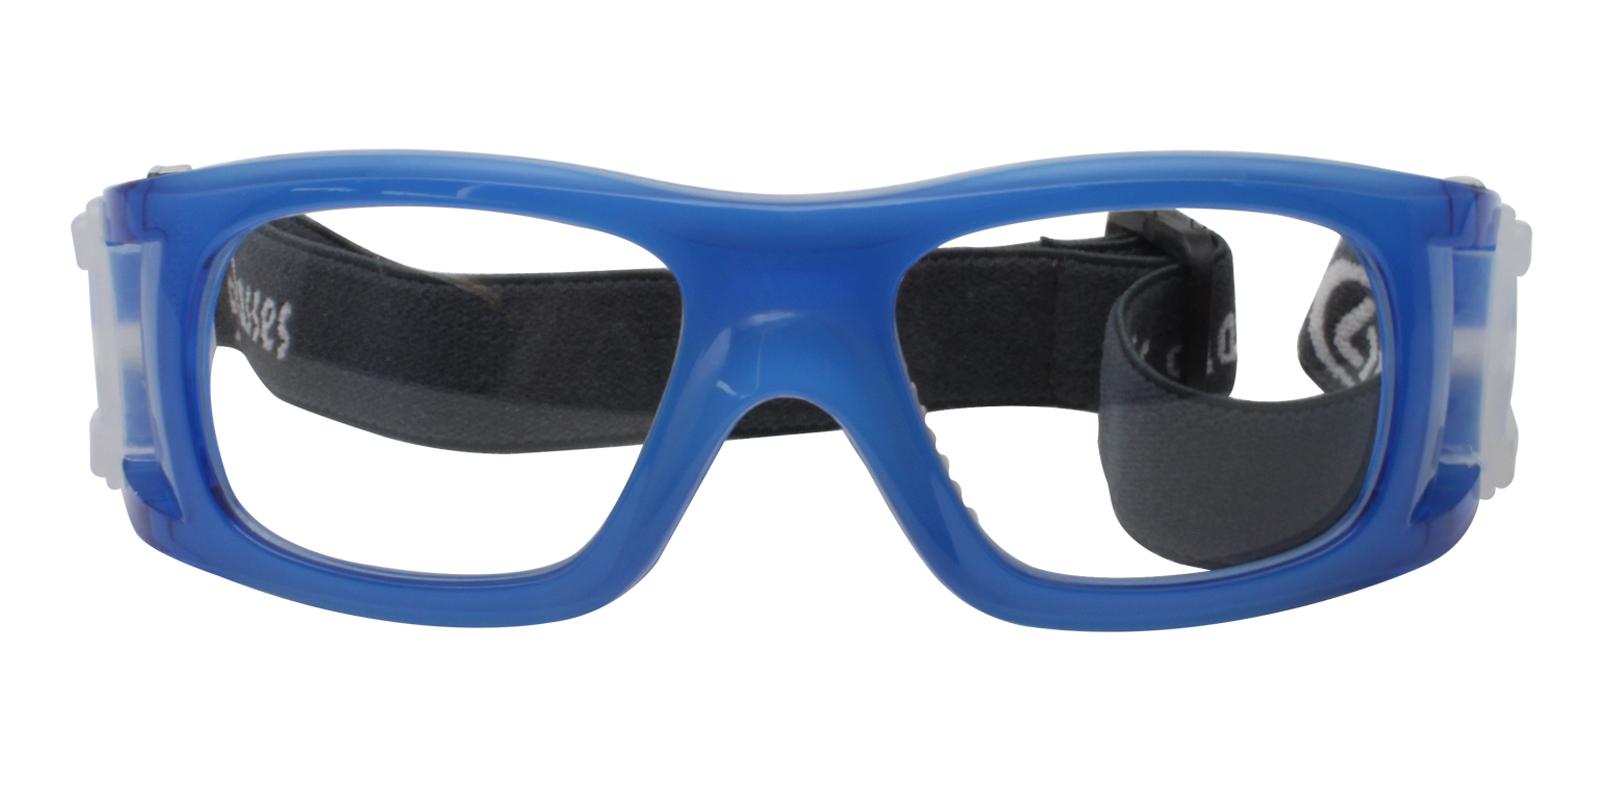 Christopher Blue Plastic NosePads , SportsGlasses Frames from ABBE Glasses